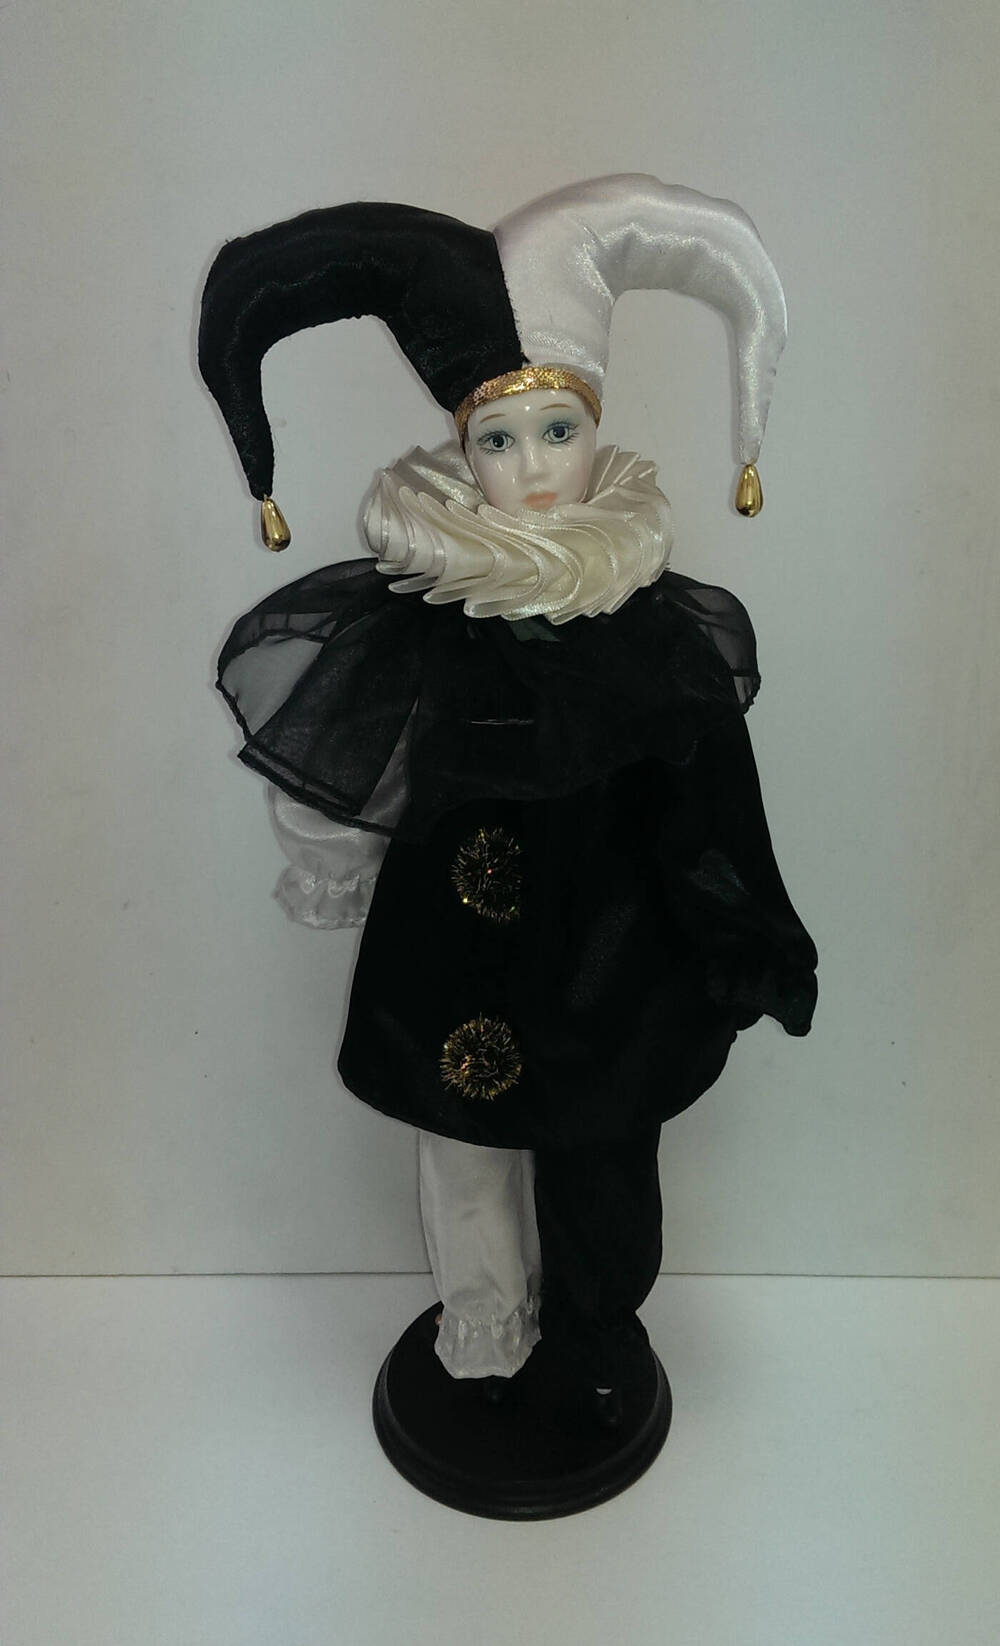 Пьеро. Кукла из Коллекции кукол ручной работы с фарфоровыми элементами «Арлекин» компании «Ремеко», Великобритания (Remeco HARLEQUIN Collection).